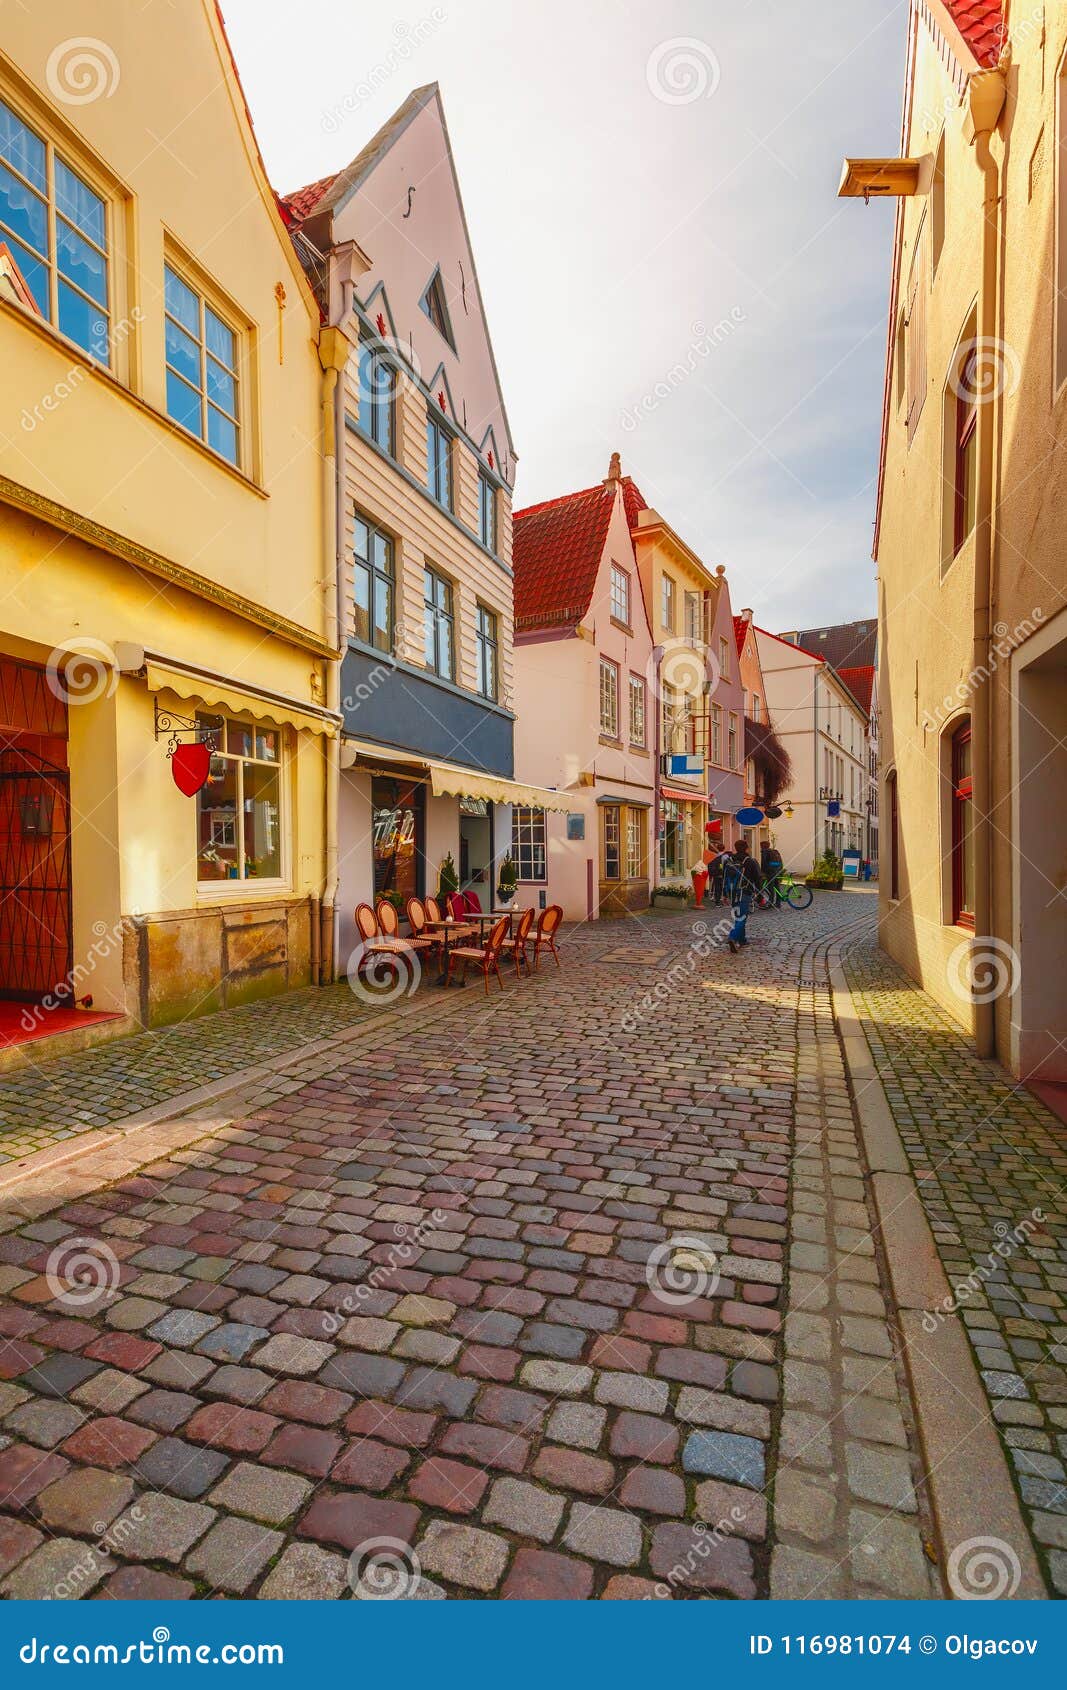 medieval street schnoor in bremen, germany